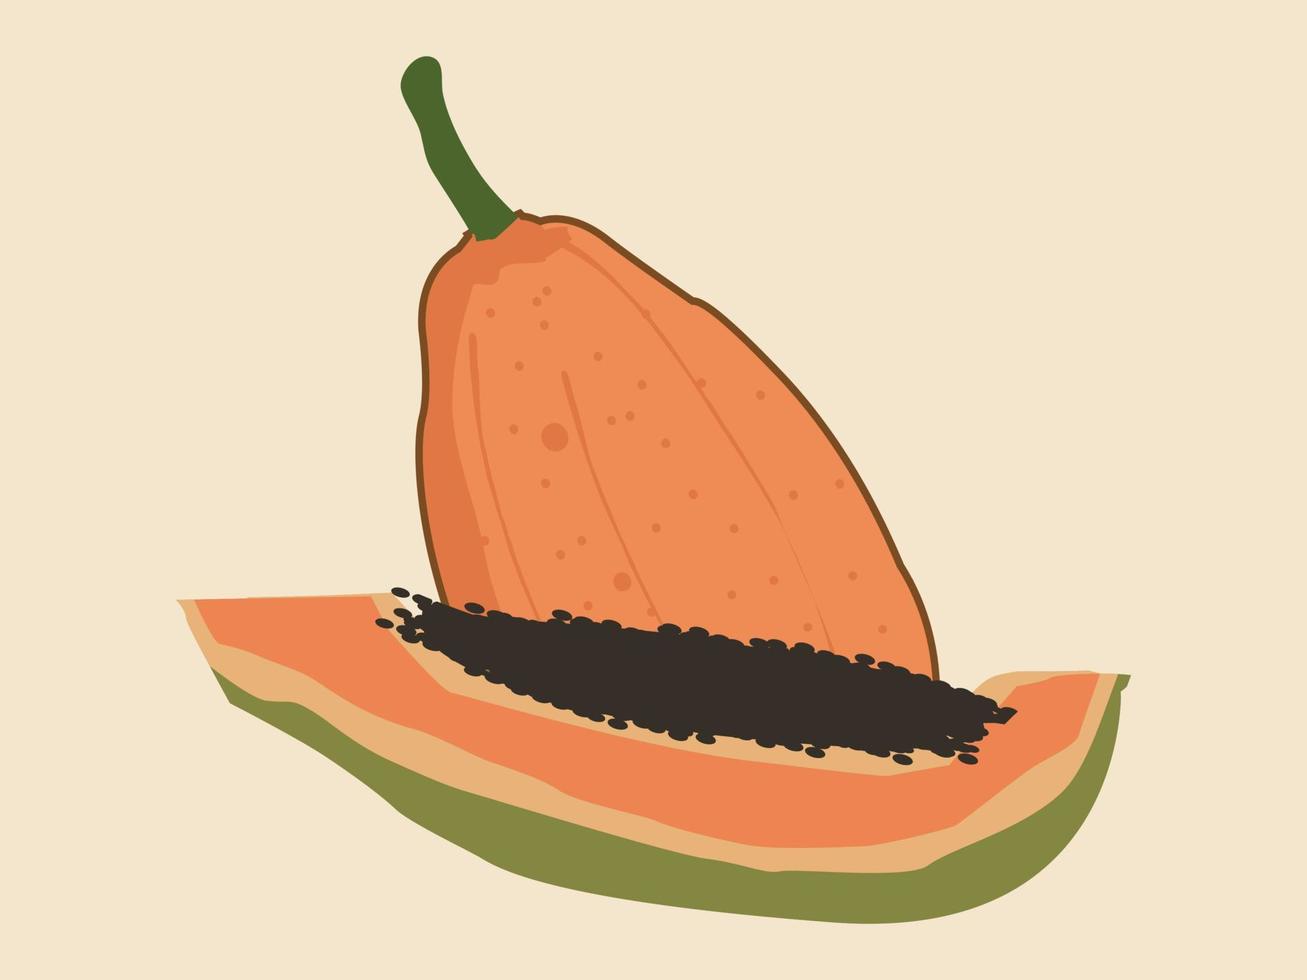 Tropical Summer Fruits Sweet Papaya vector